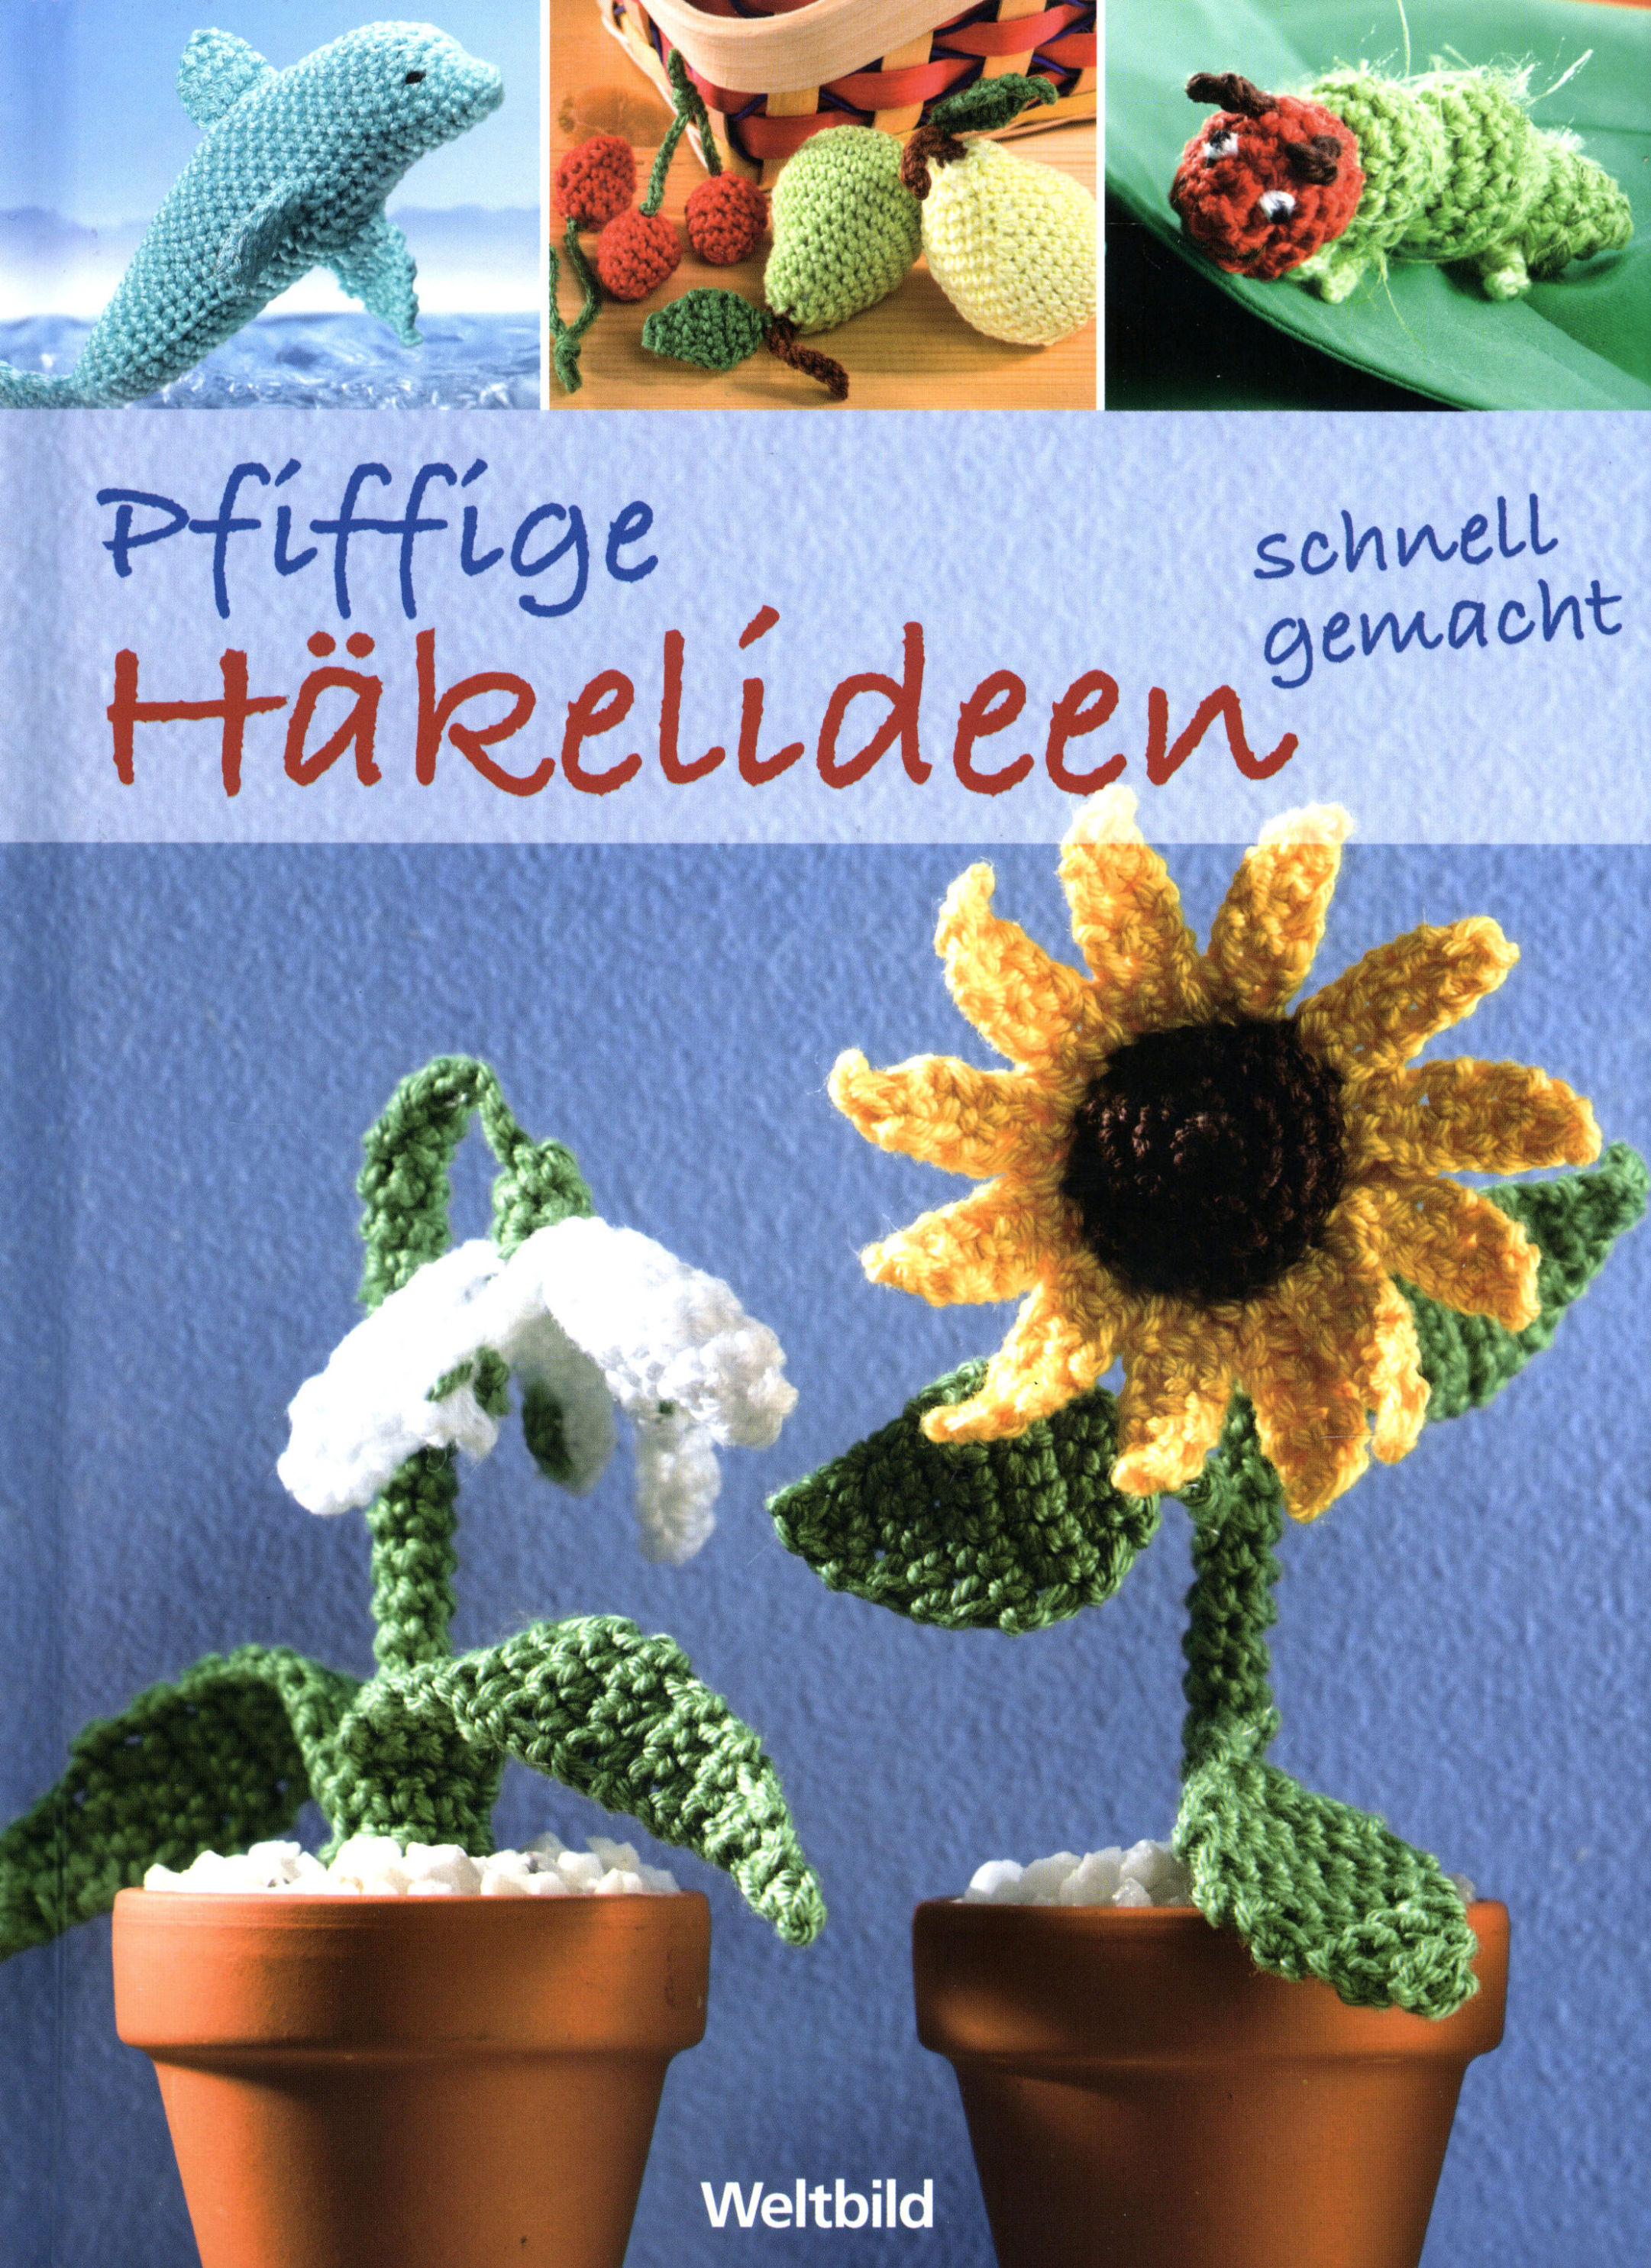 Topfpflanzen häkeln (eBook, PDF) von Stefanie Brych - bücher.de